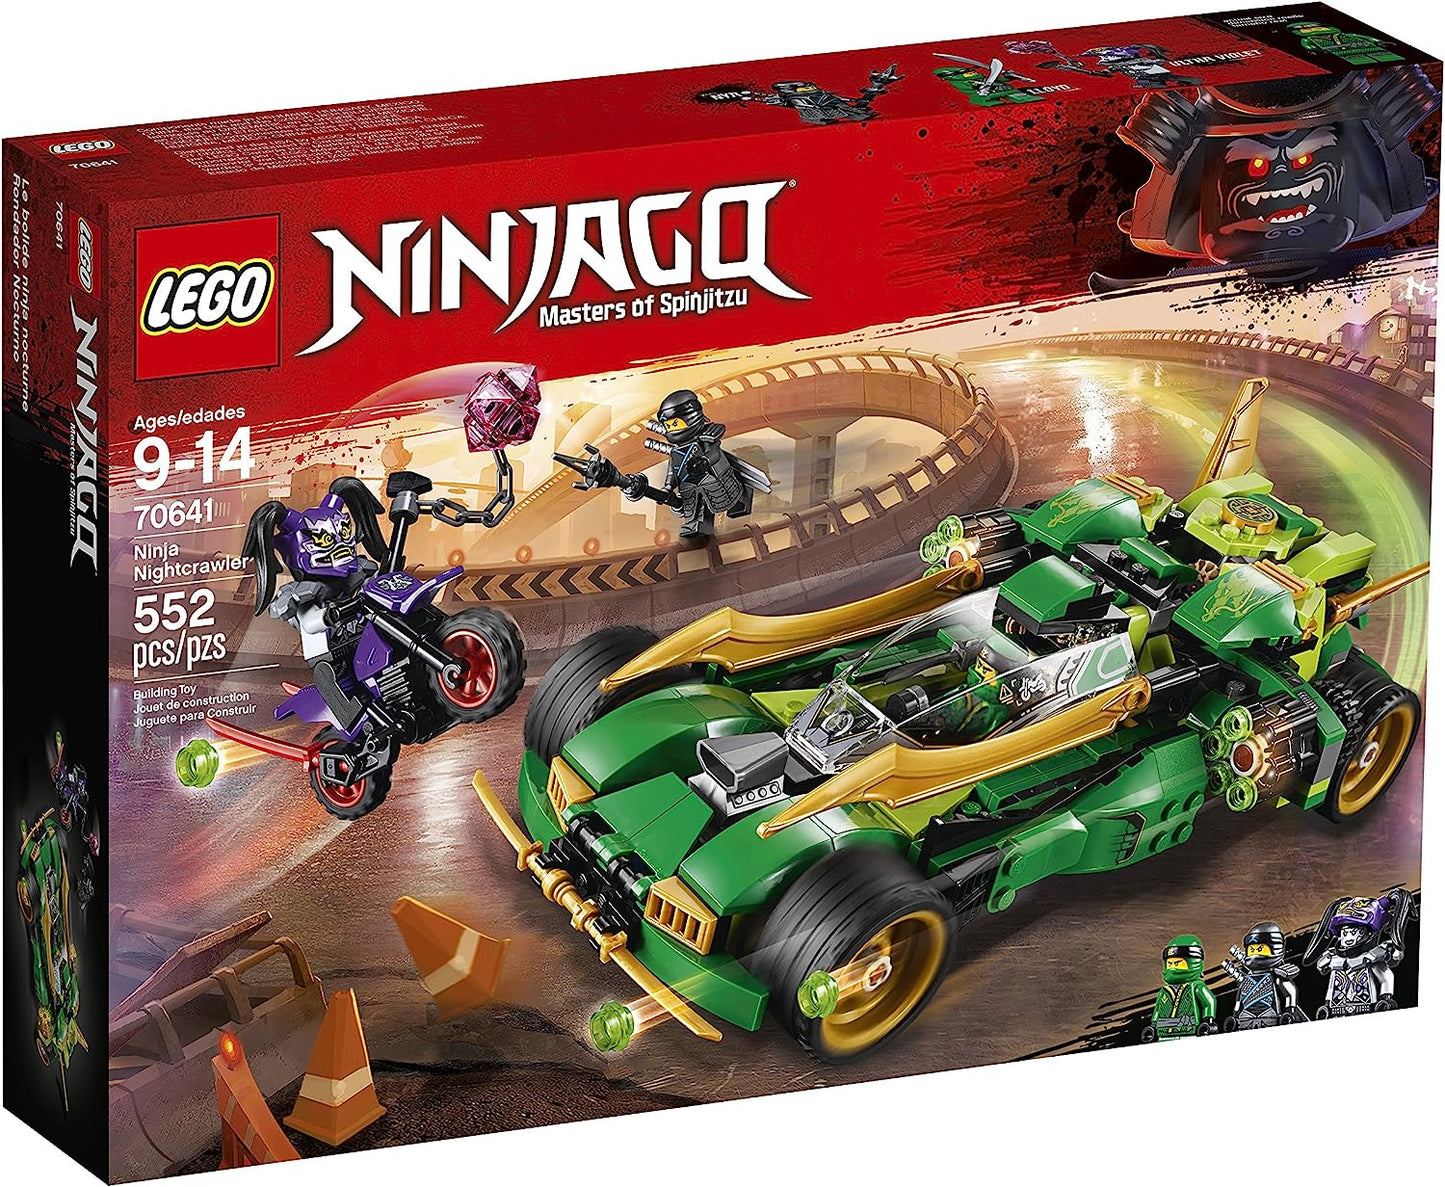 70641 NINJAGO: Ninja Nightcrawler - CERTIFIED